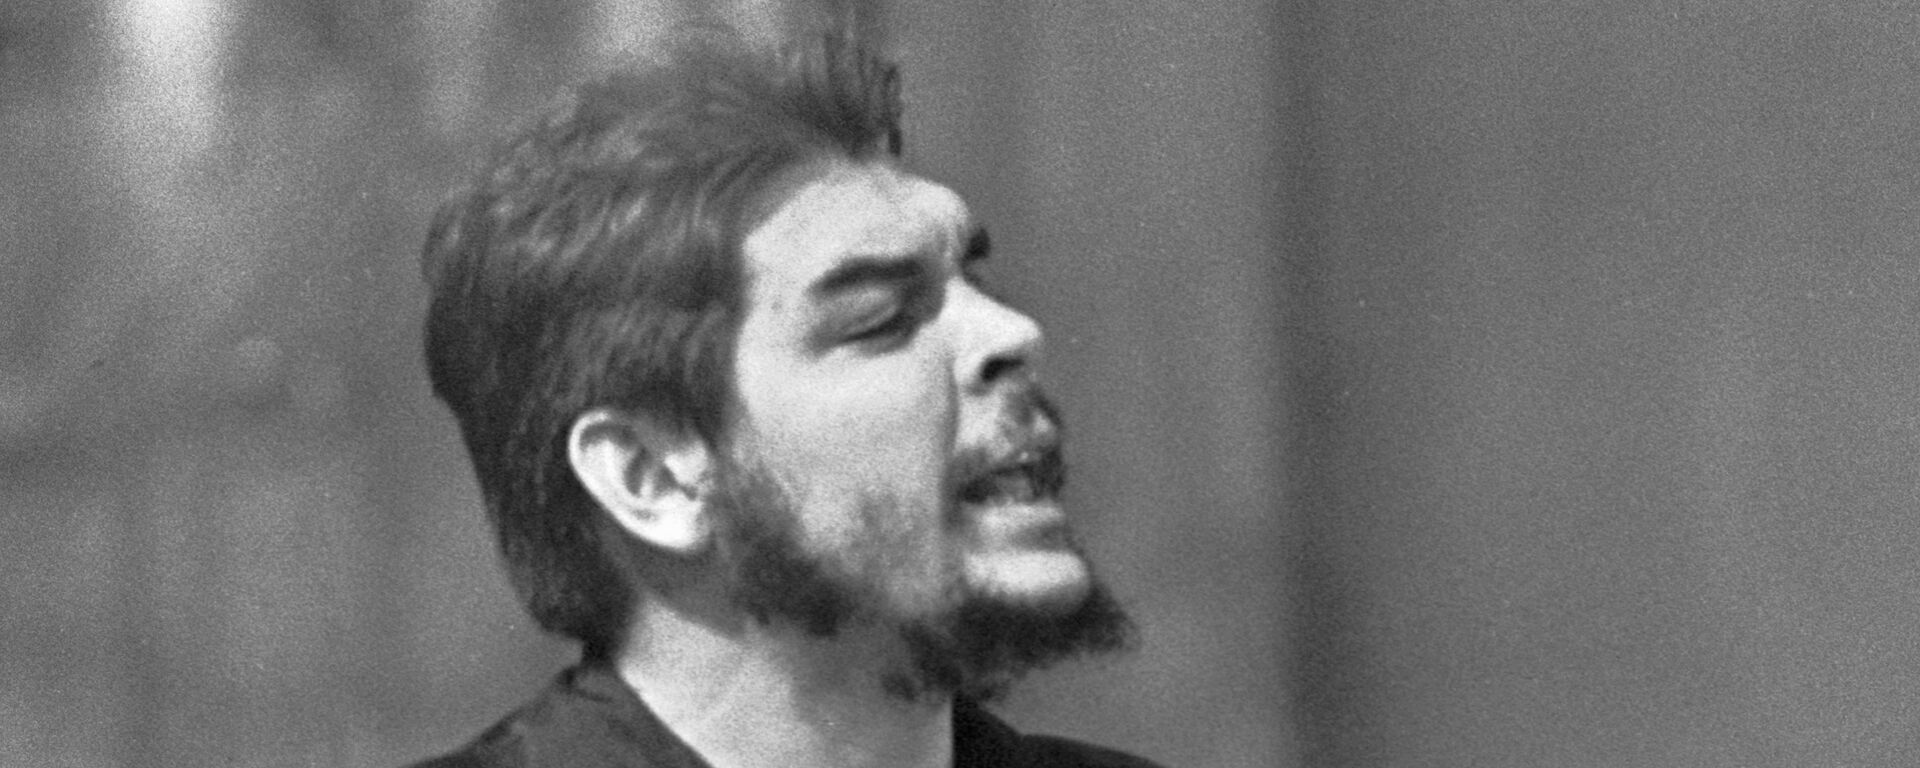 Che Guevara en Moscú en 1960 - Sputnik Mundo, 1920, 09.10.2017